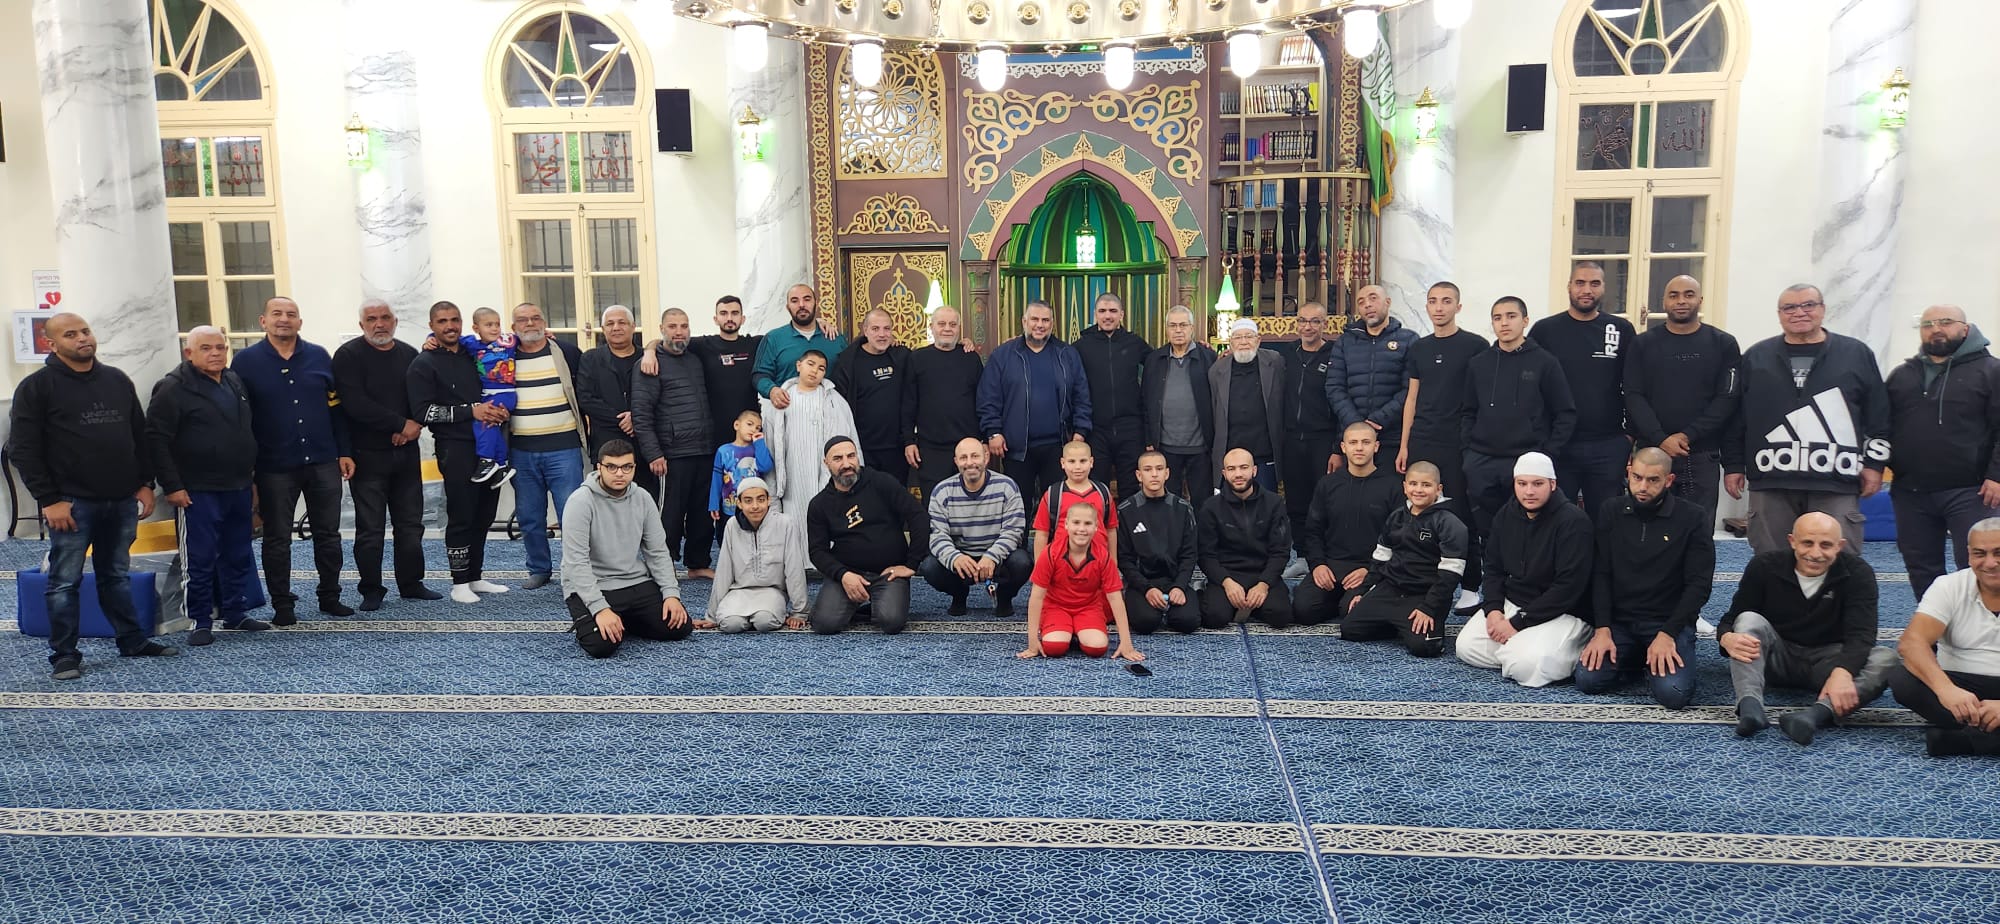 يافا: بالصور إنطلاق أسبوع الدعوة بأمسية في مسجد النزهة